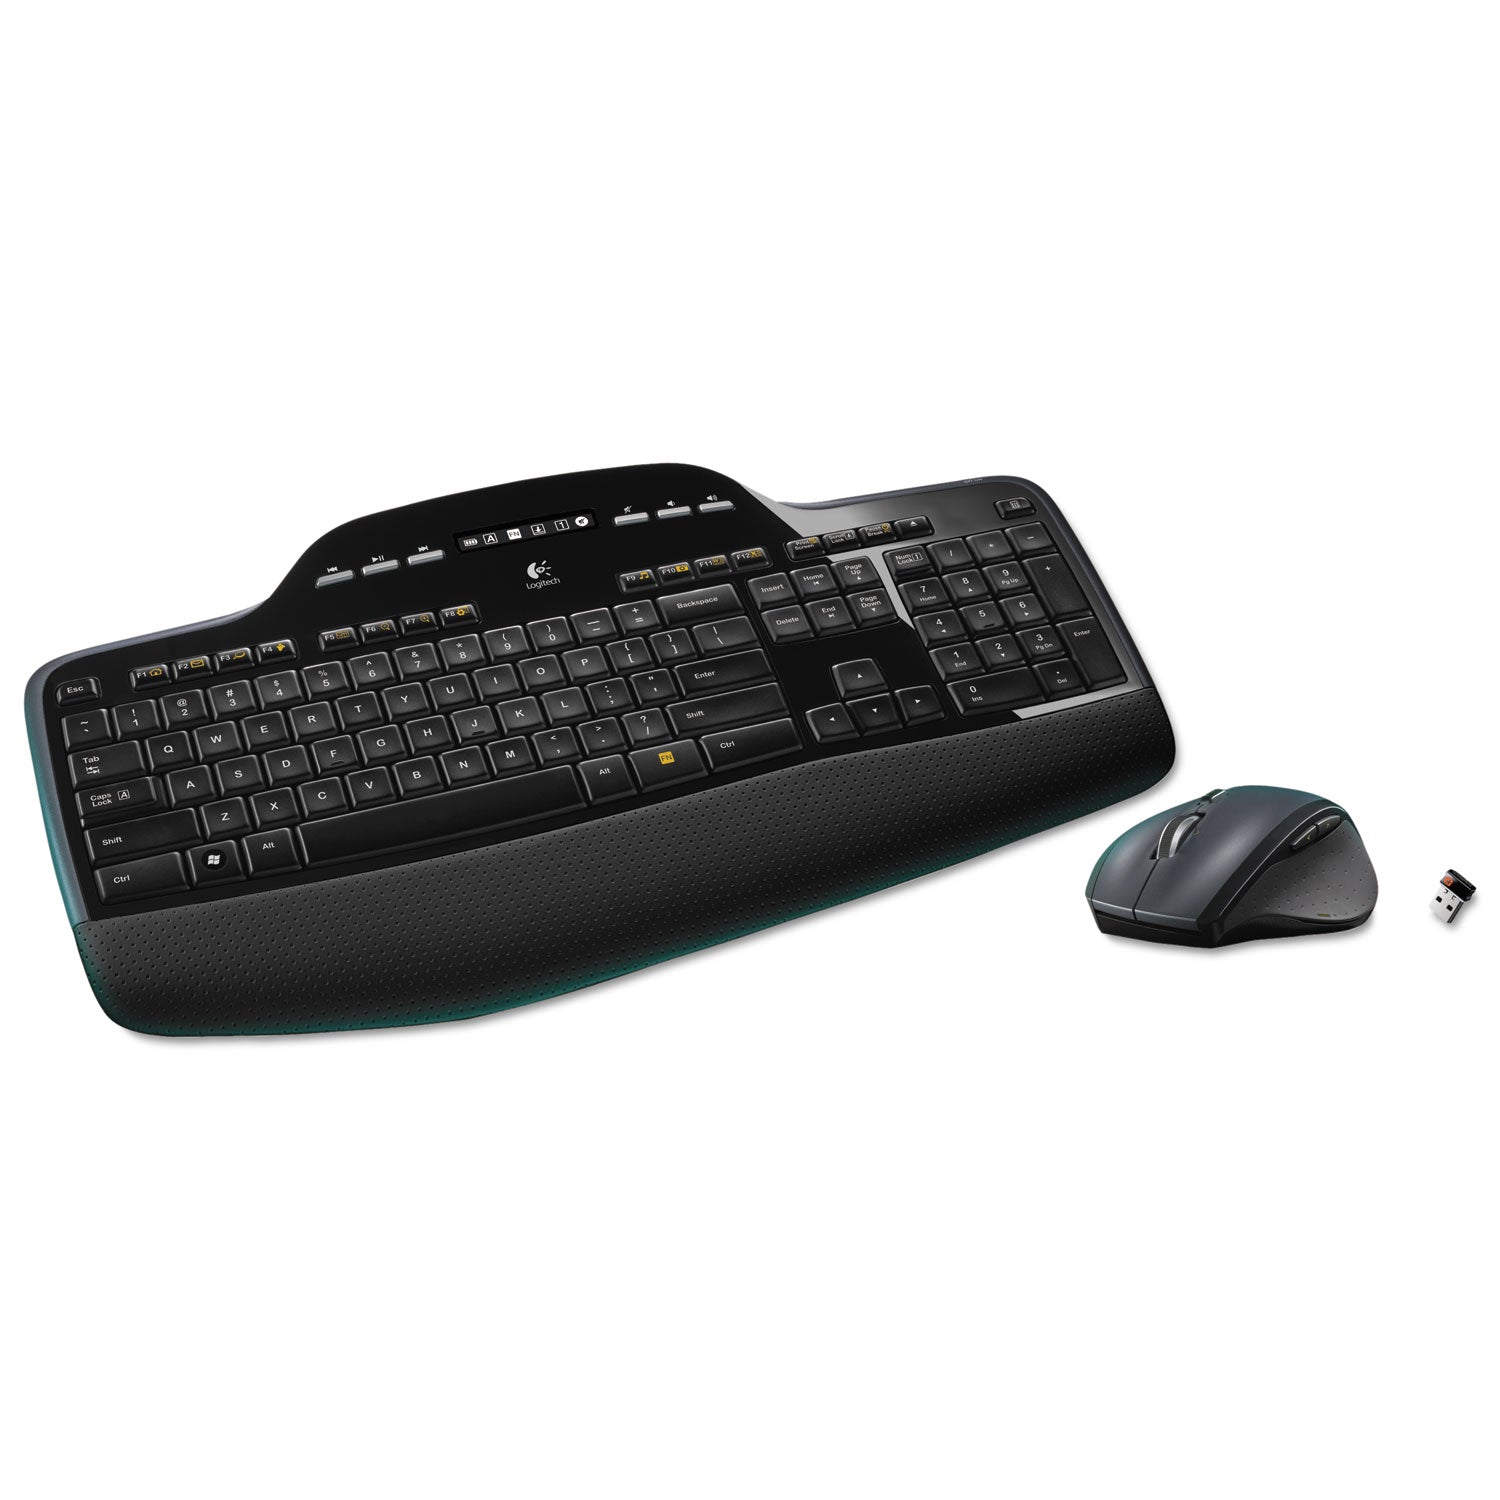 MK710 Wireless Keyboard + Mouse Combo, 2.4 GHz Frequency/30 ft Wireless Range, Black - 